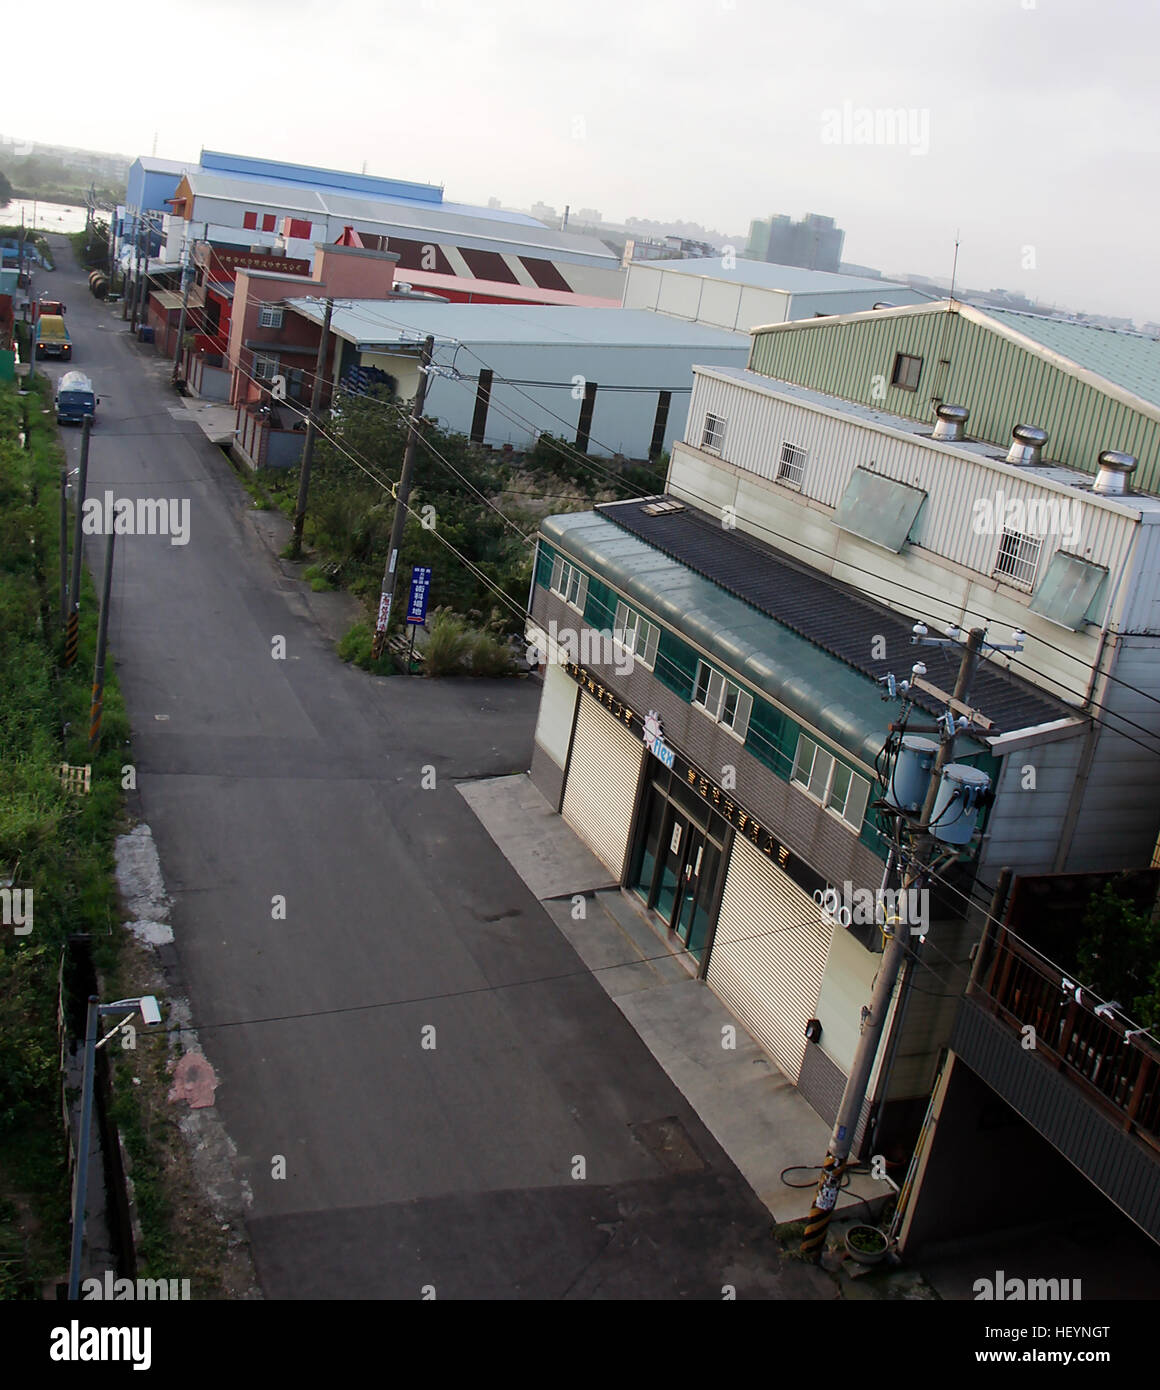 Blickte auf einer Straße in einer industriellen Umgebung. Stockfoto